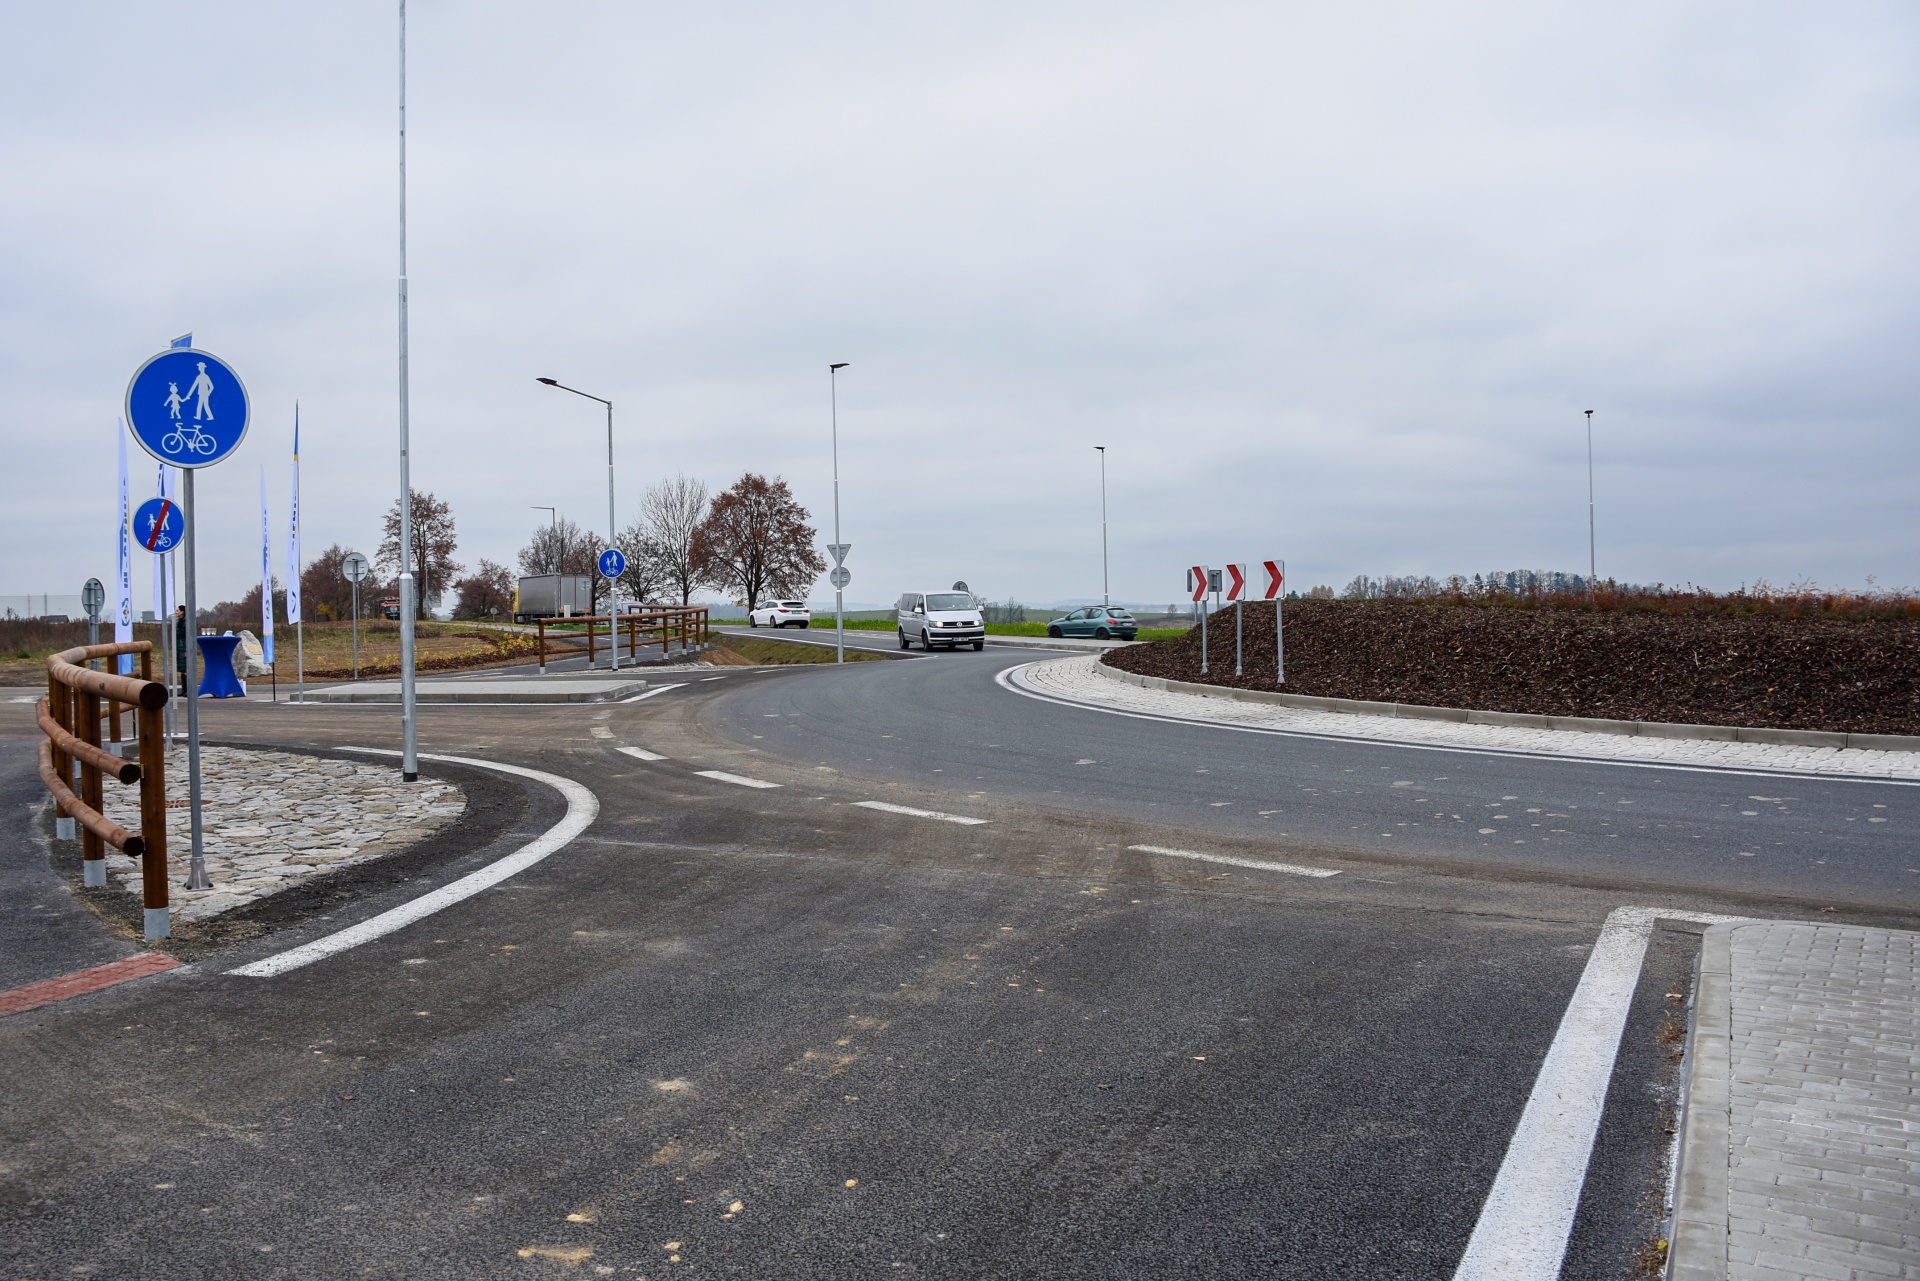 Nová okružní křižovatka v průmyslové zóně plně slouží řidičům